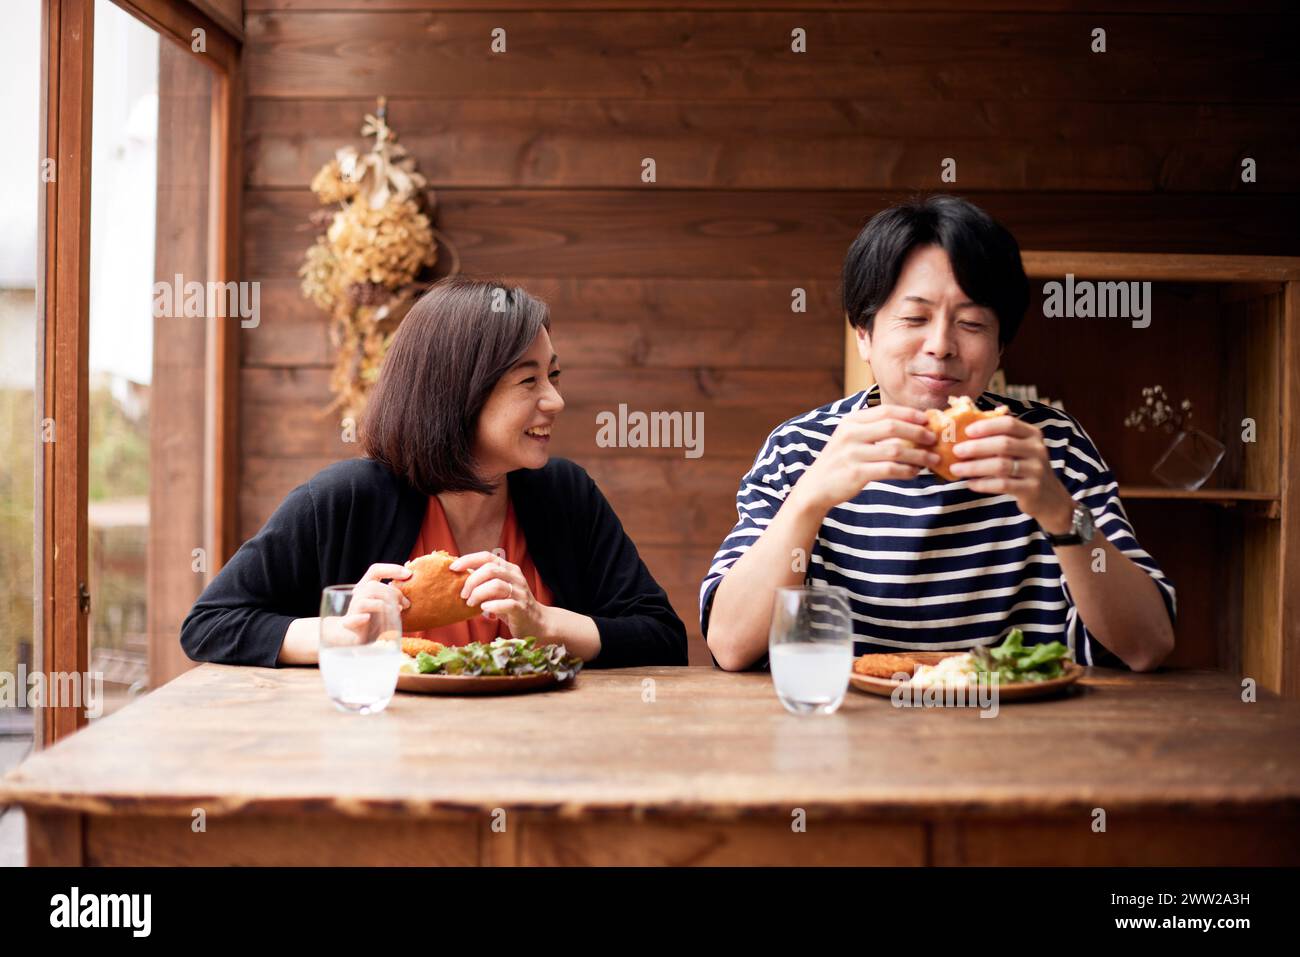 Zwei Leute essen ein Sandwich Stockfoto